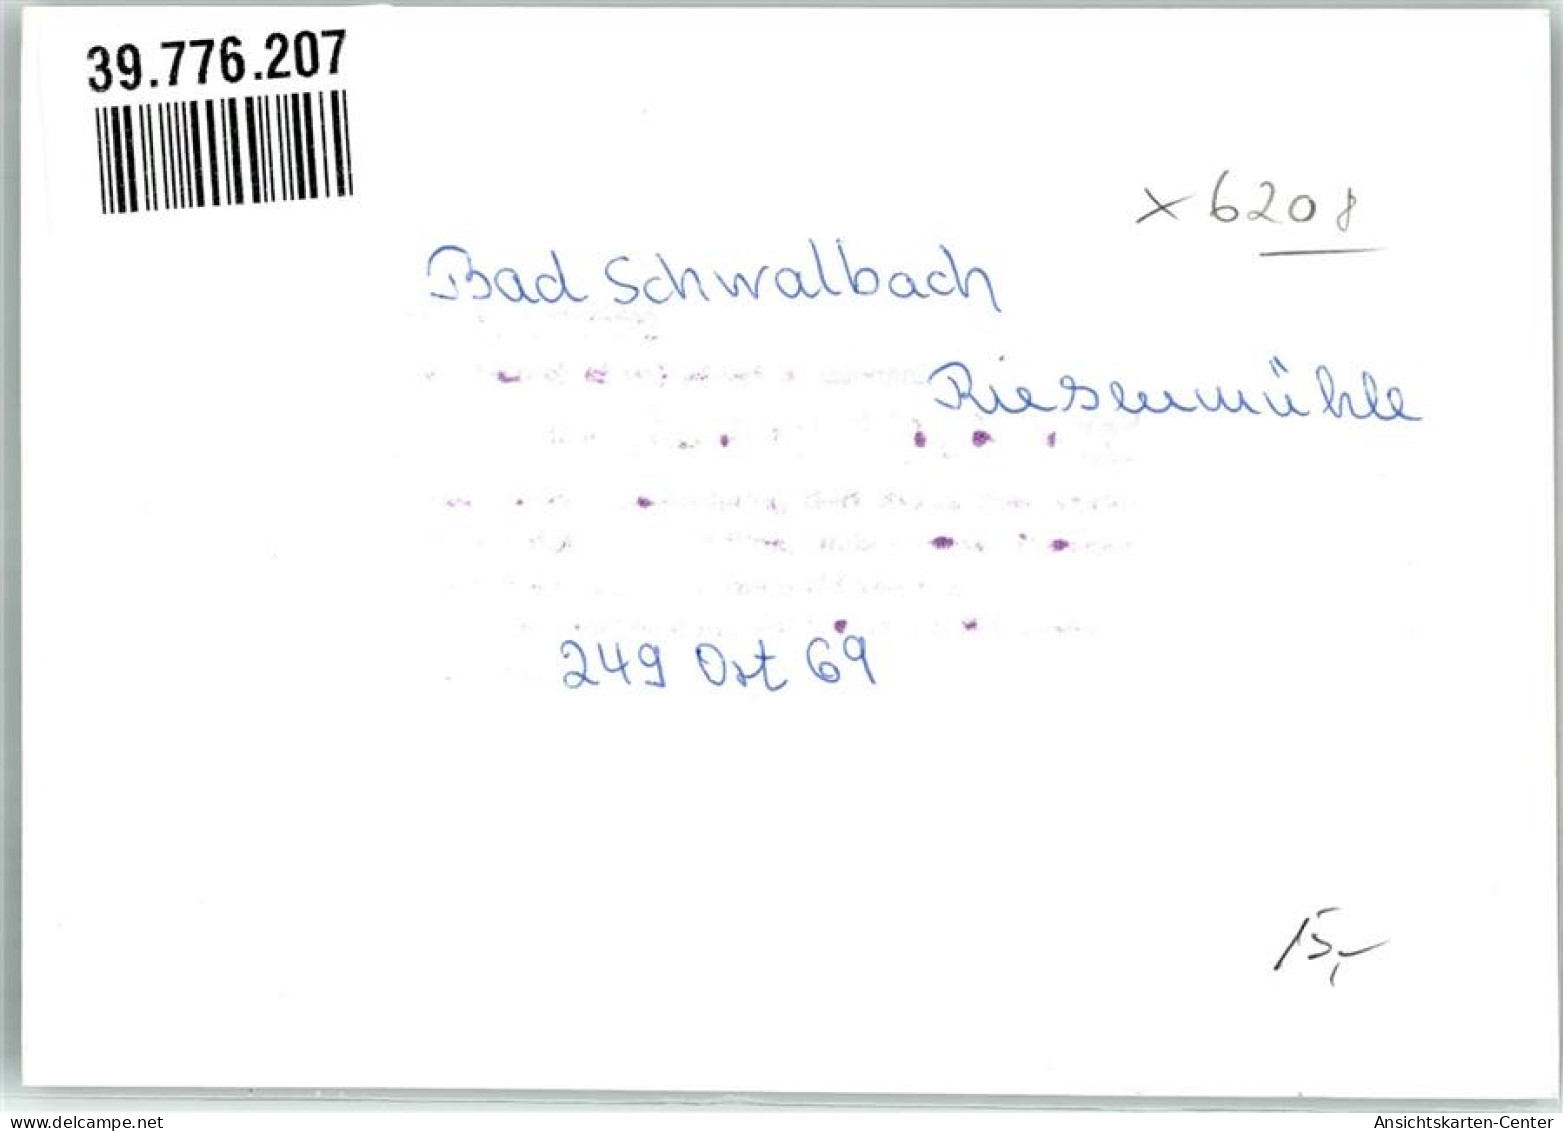 39776207 - Bad Schwalbach - Bad Schwalbach